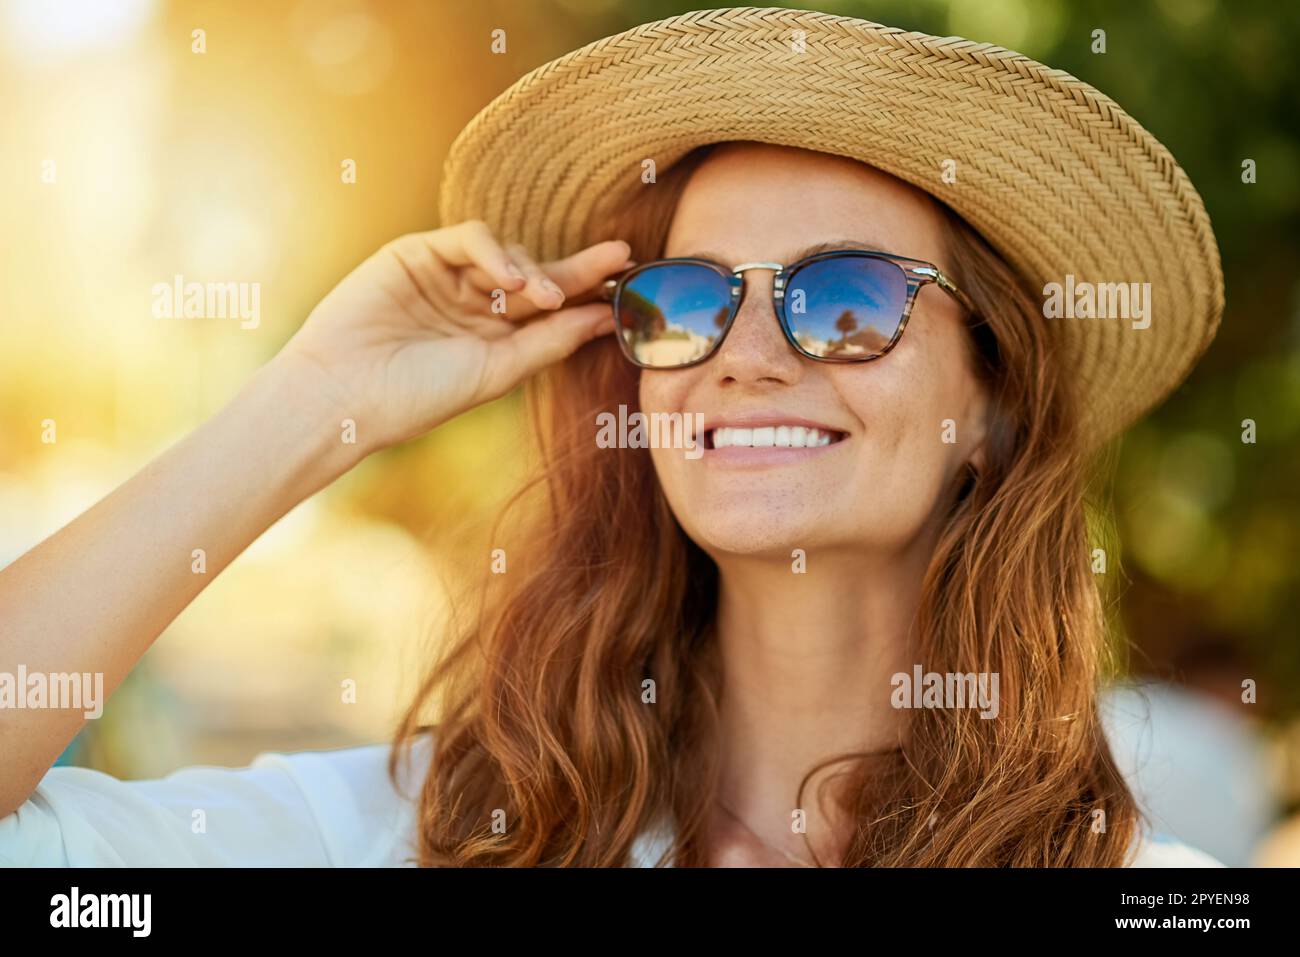 L'estate fa risalta il maggior numero di sorrisi. una giovane donna attraente che si gode una giornata estiva all'aperto. Foto Stock